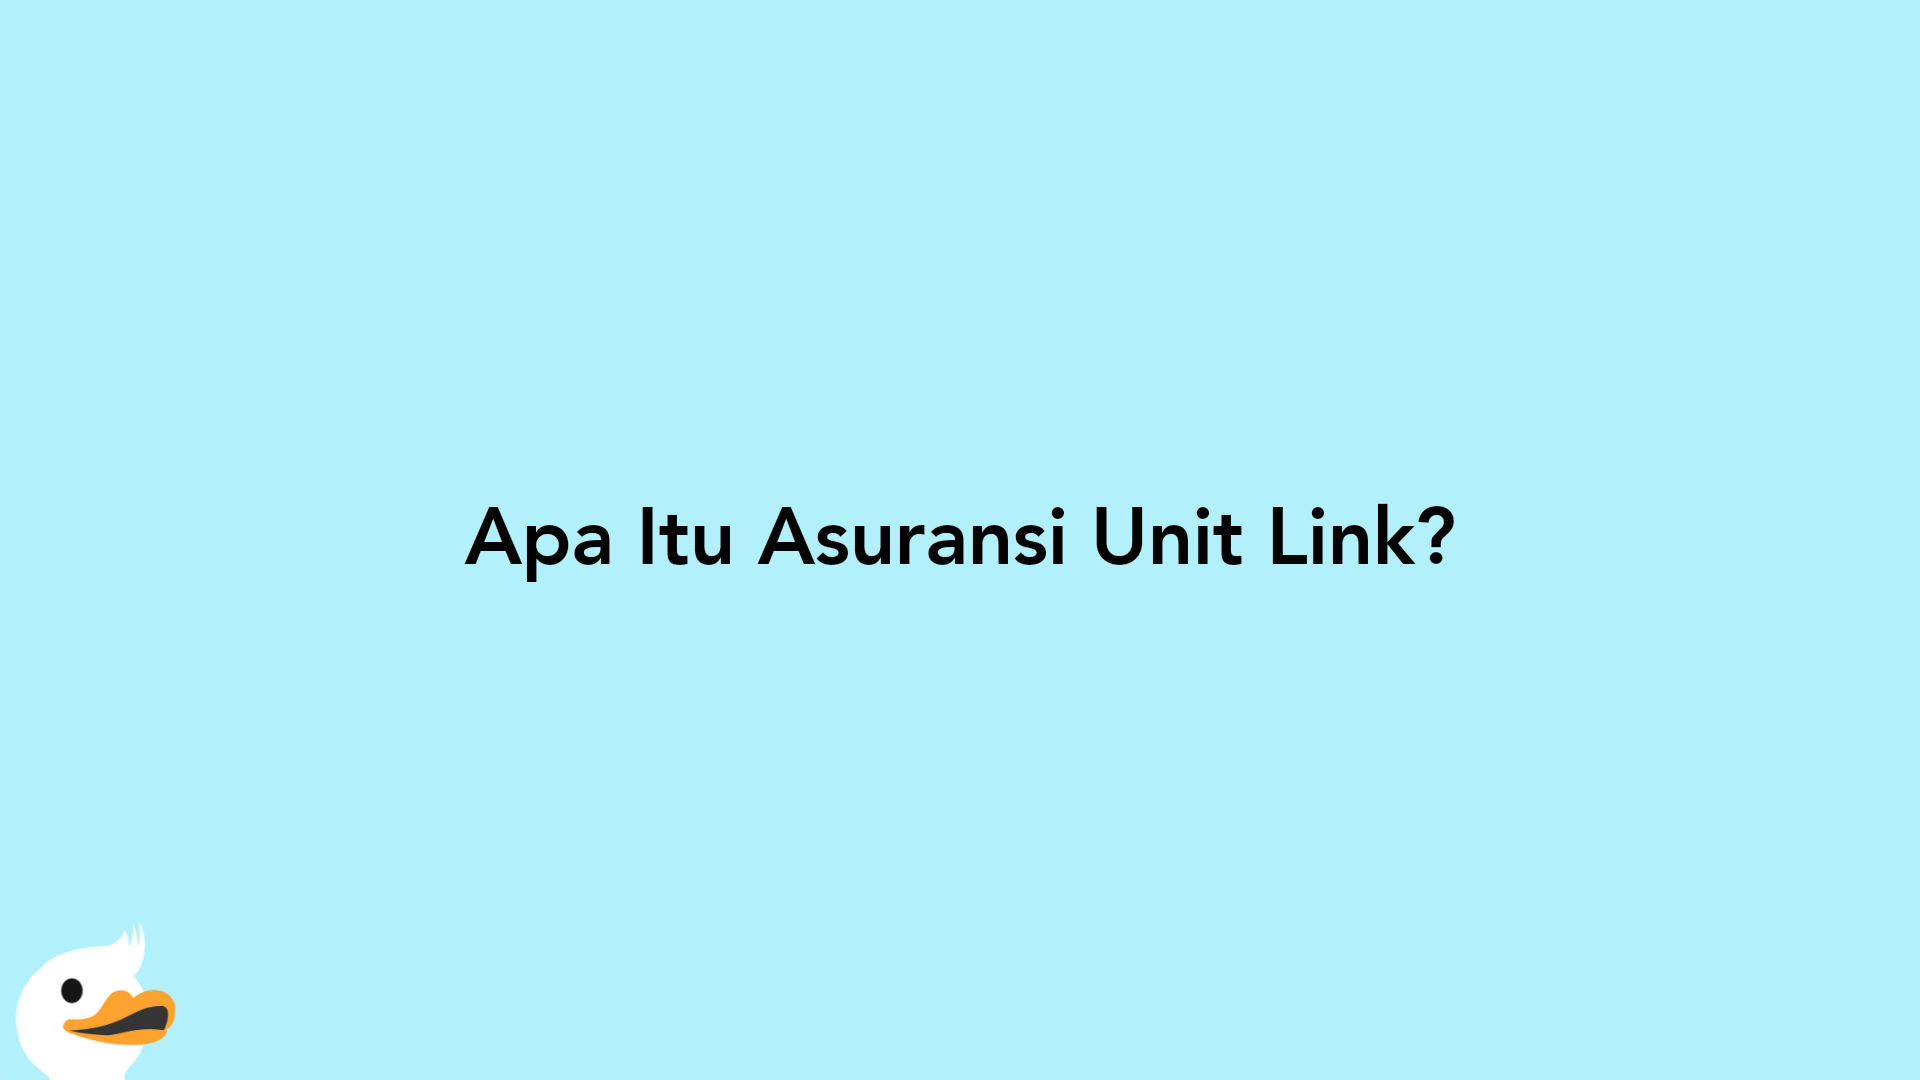 Apa Itu Asuransi Unit Link?